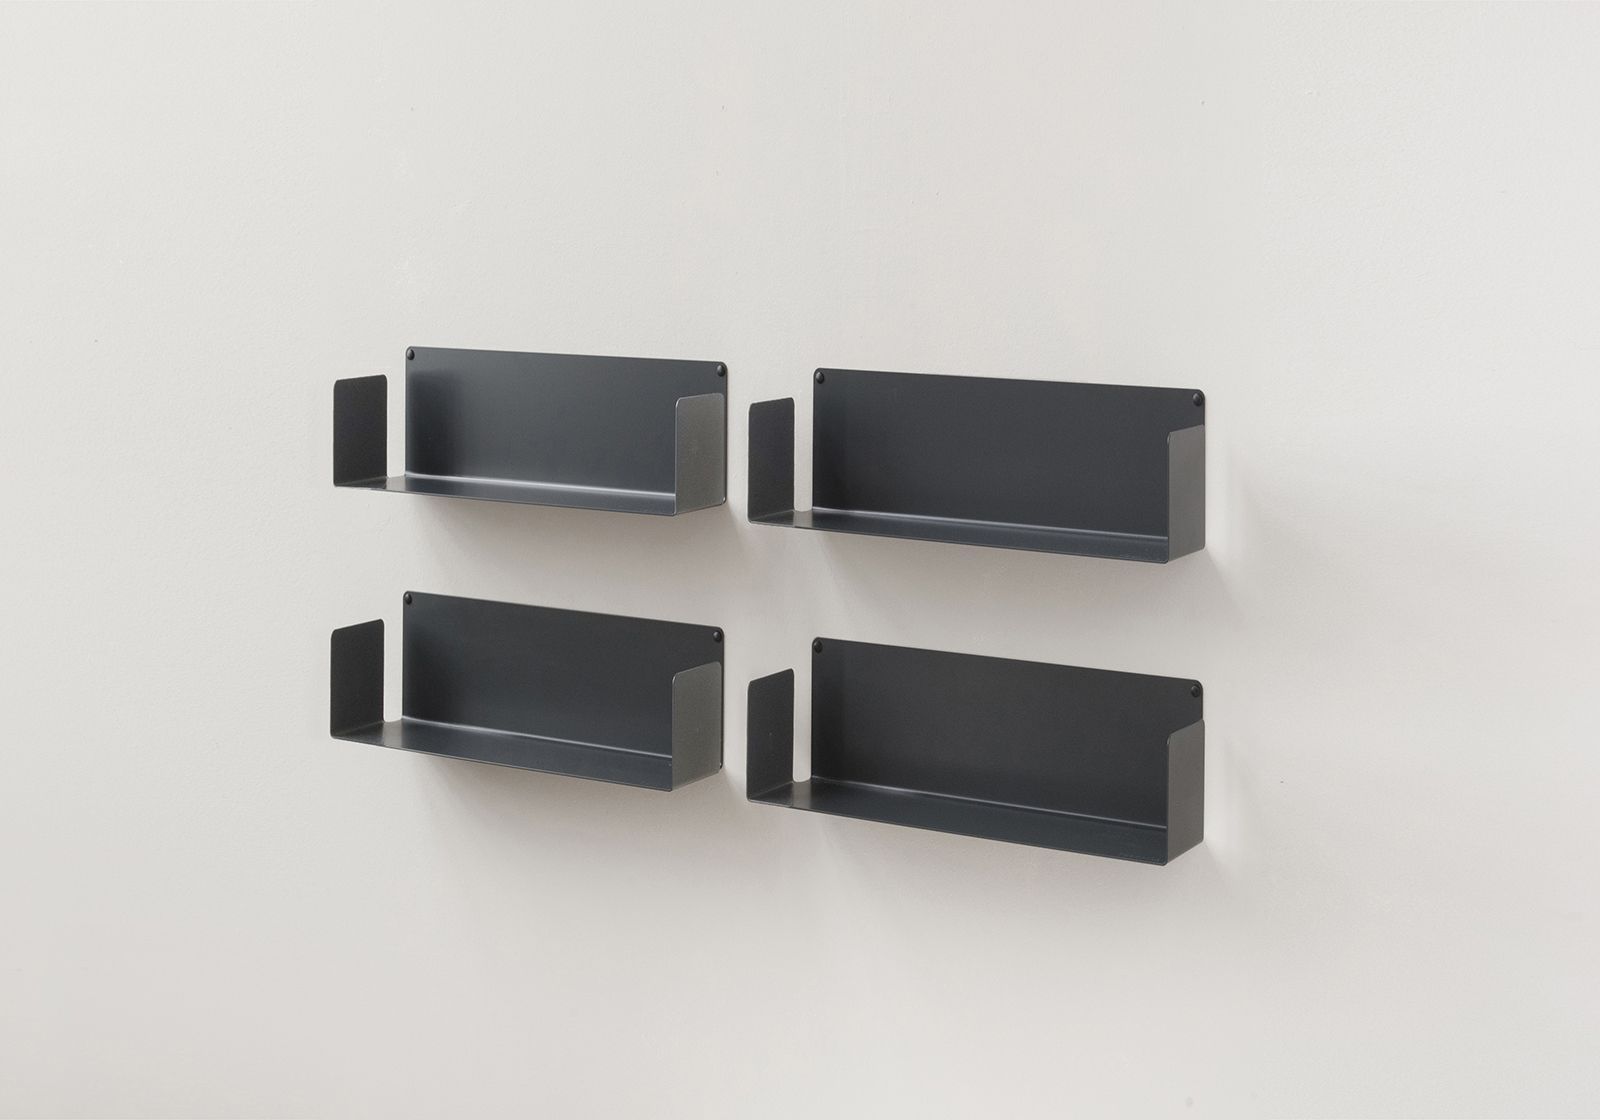 Grey 60 x 15 x 15 cm Cds Steel For Books Dvds TEEbooks Floating Shelves Set of 4 shelves 